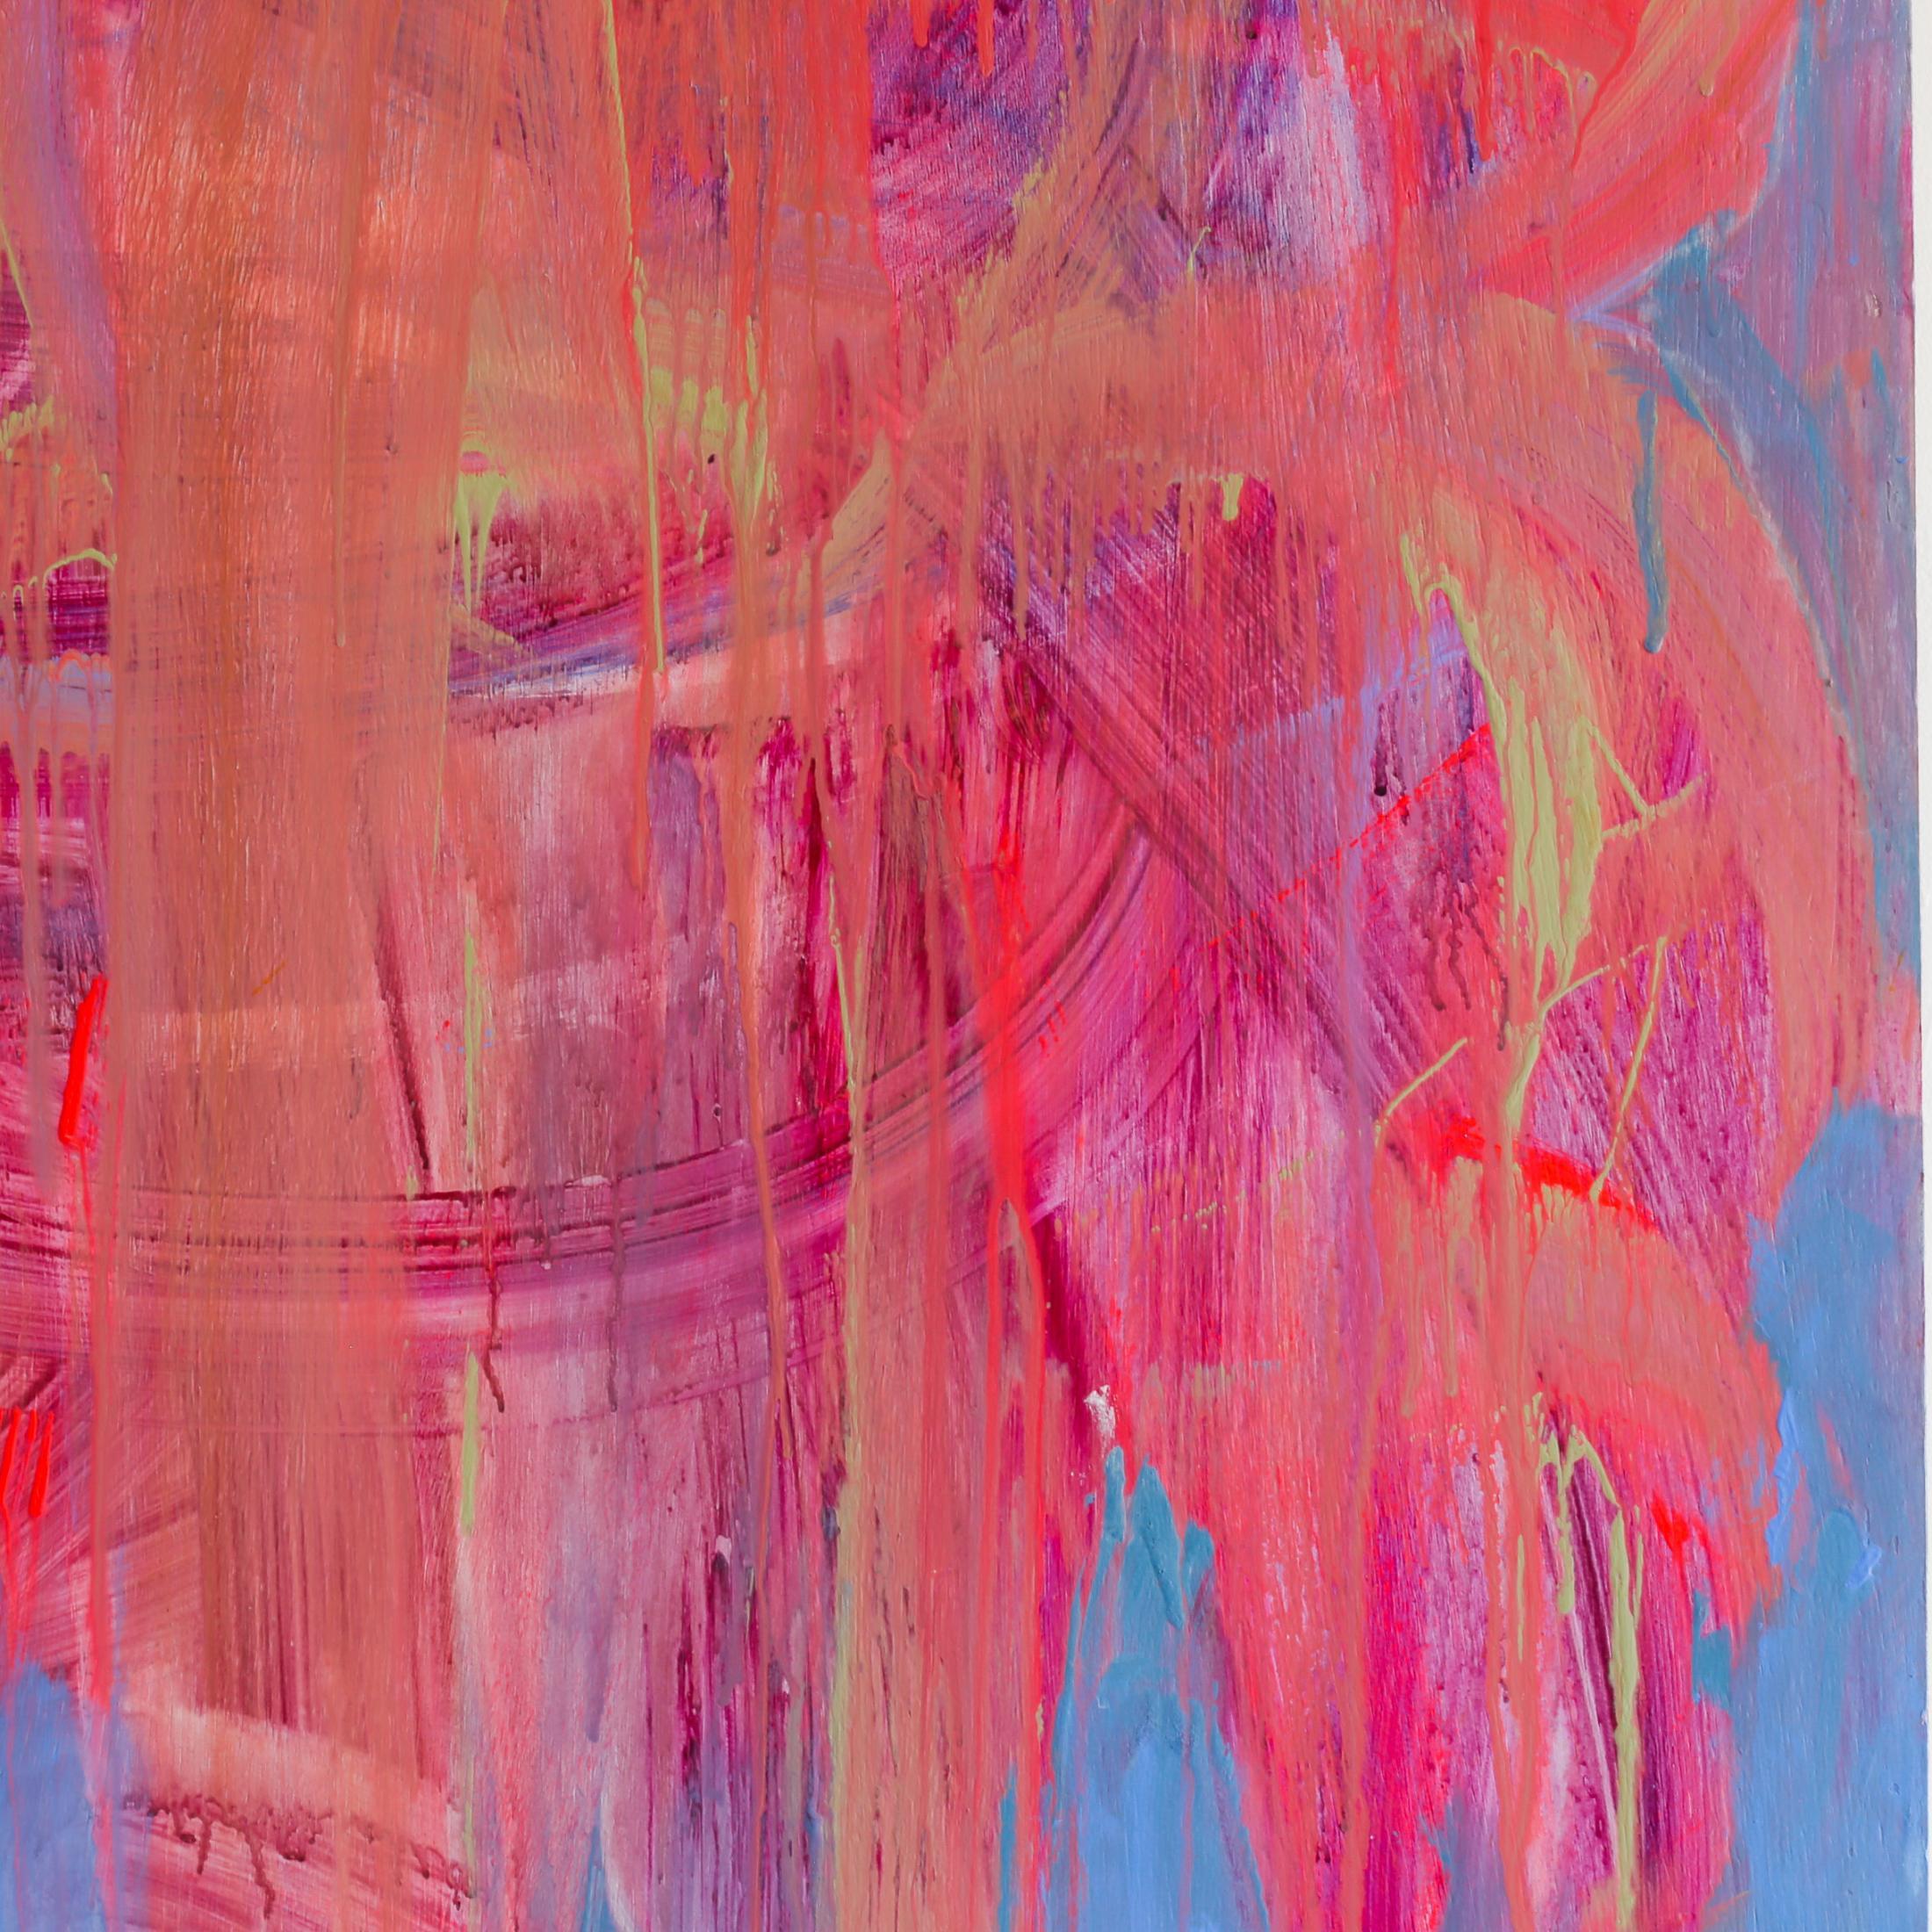 Yum II de l'artiste Brenda Zappitell est une œuvre abstraite contemporaine rose et ingigo clair faite de flashe et d'acrylique avec de la cire froide sur panneau 50 x 50. Son prix est de 14 000 $.

Brenda Zappitell crée des oeuvres expressionnistes